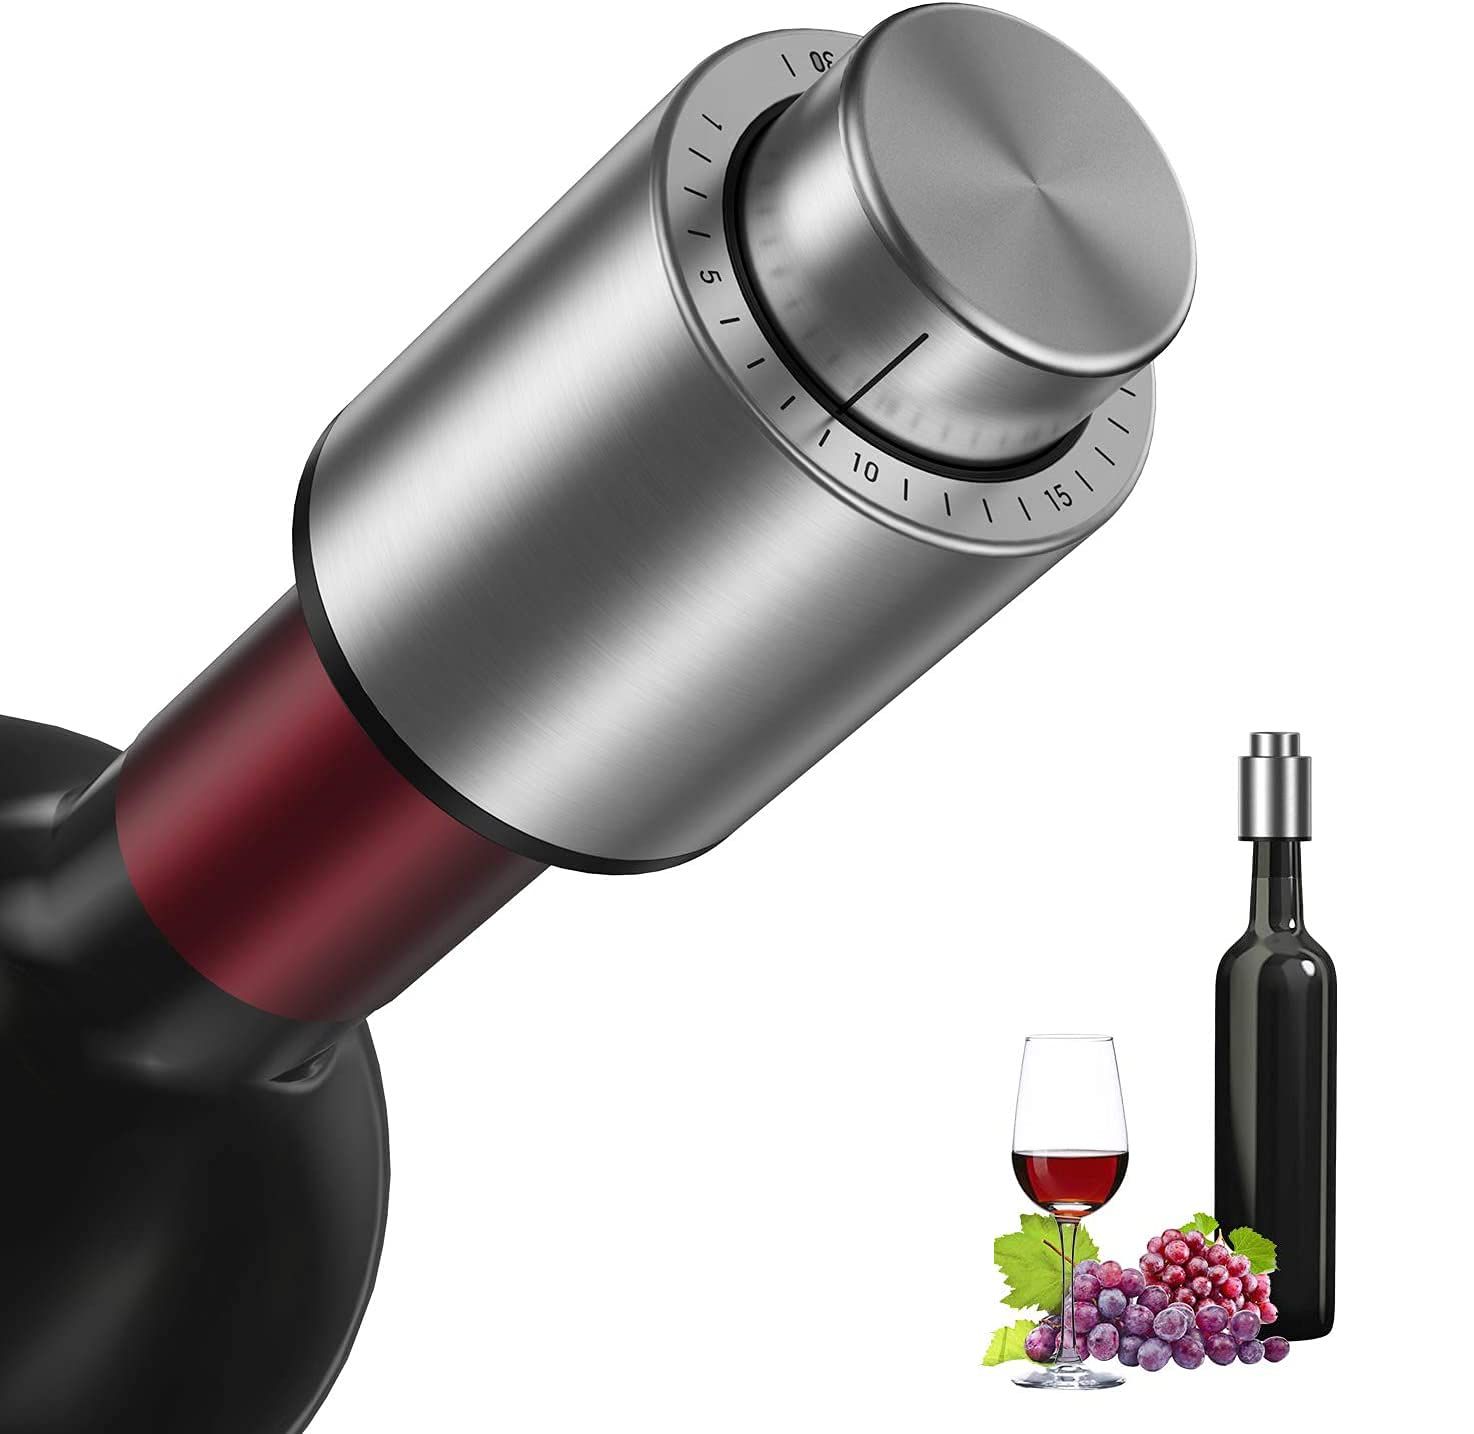 2個セット ワイン栓 ワインストッパー バキュームポンプ シャンパンストッパー 真空ワインストッパー ワイン保存 ワインキャンプ ステンレス製 赤ワイン 白ワイン シャンパン 酸化防止 真空保存 日付スケール